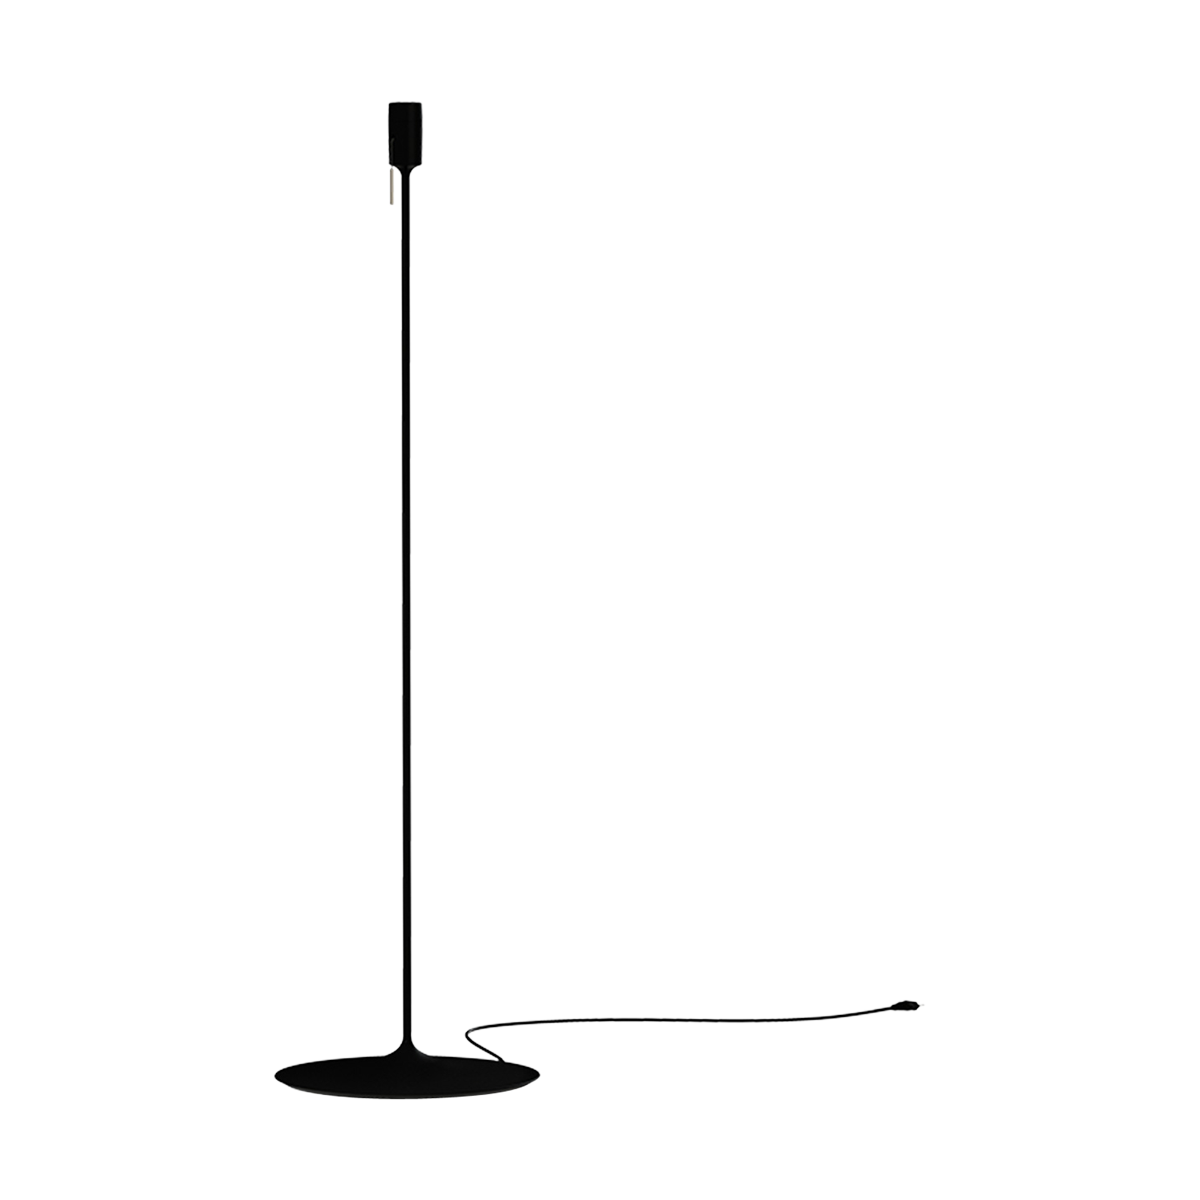 Sante vloerlamp standaard black - 140 cm